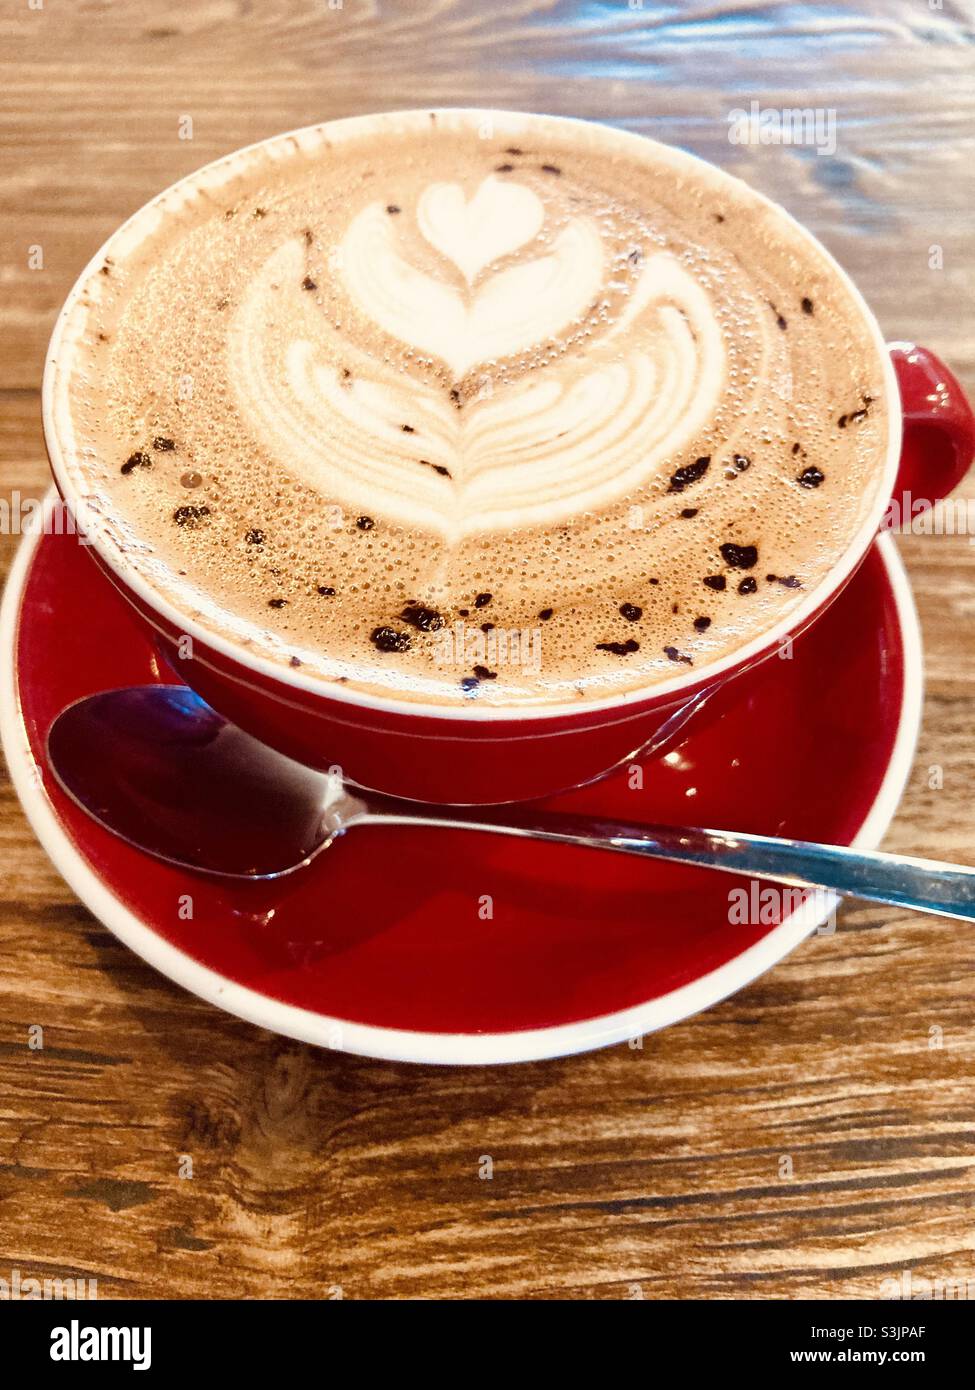 Kaffeekunst, handwerklicher Cappuccino-Kaffee in einer roten Tasse mit Untertasse Stockfoto